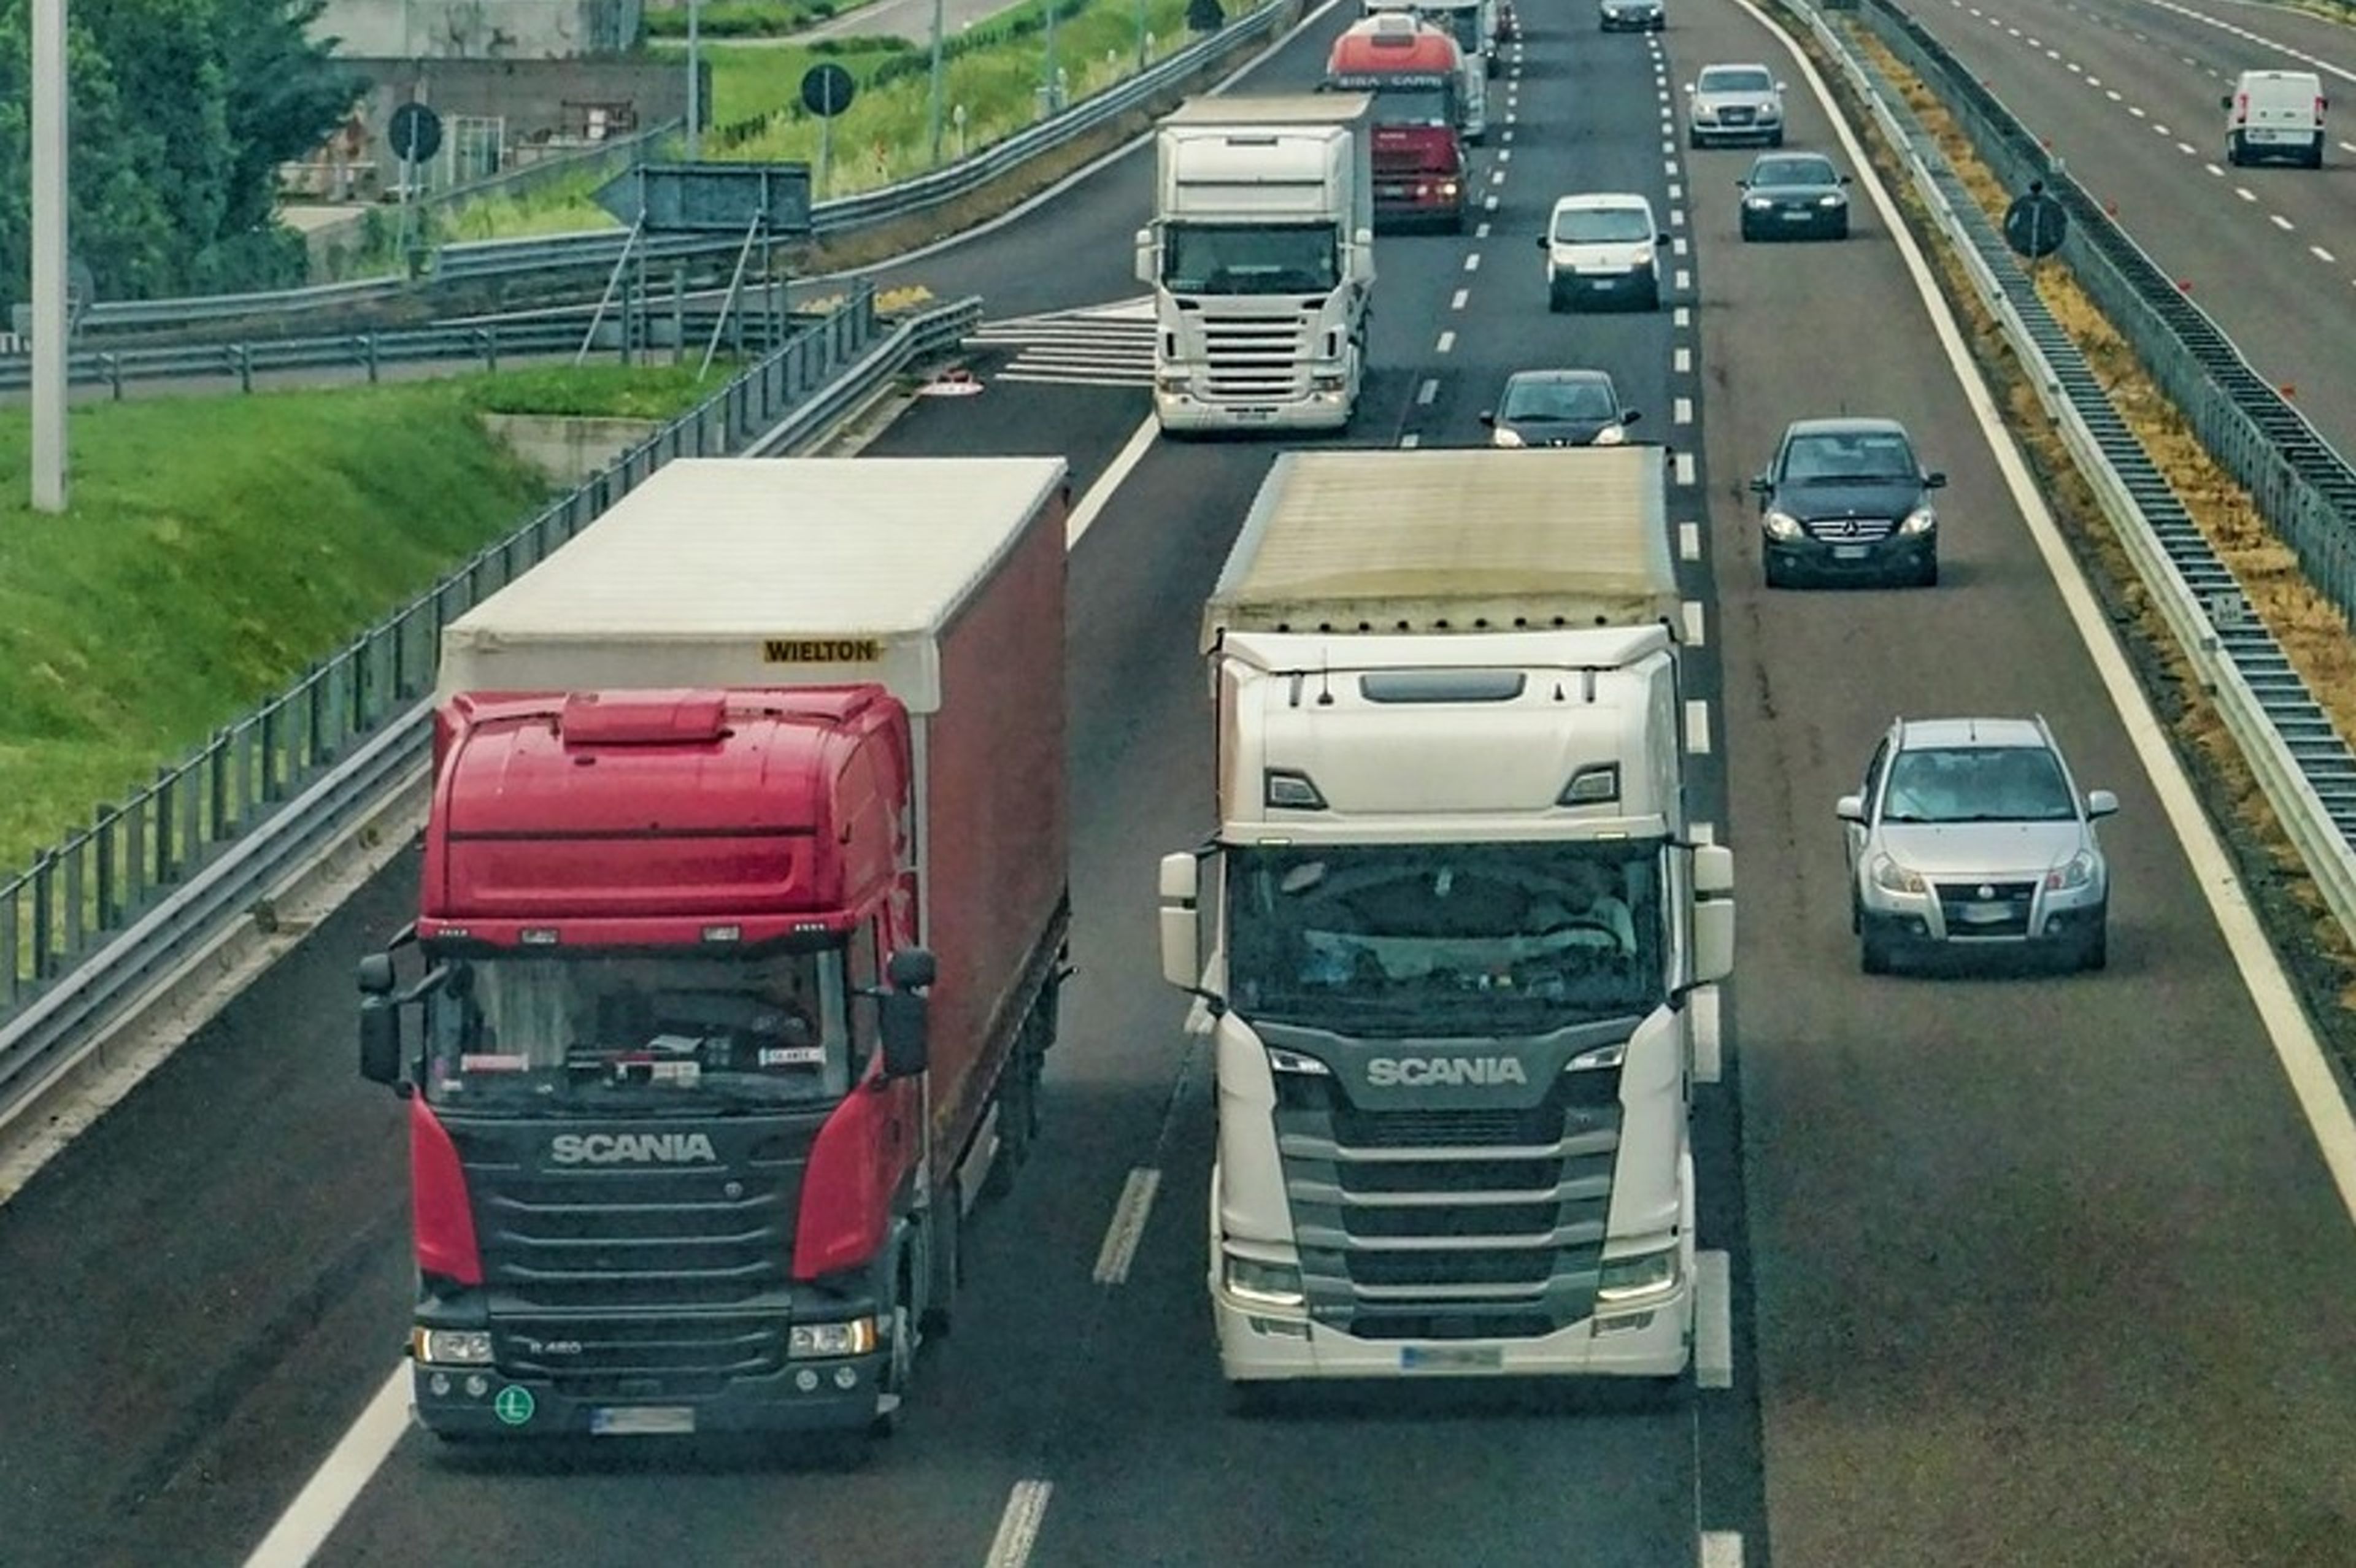 La DGT está pensando seriamente quitar camiones de la carretera para evitar accidentes